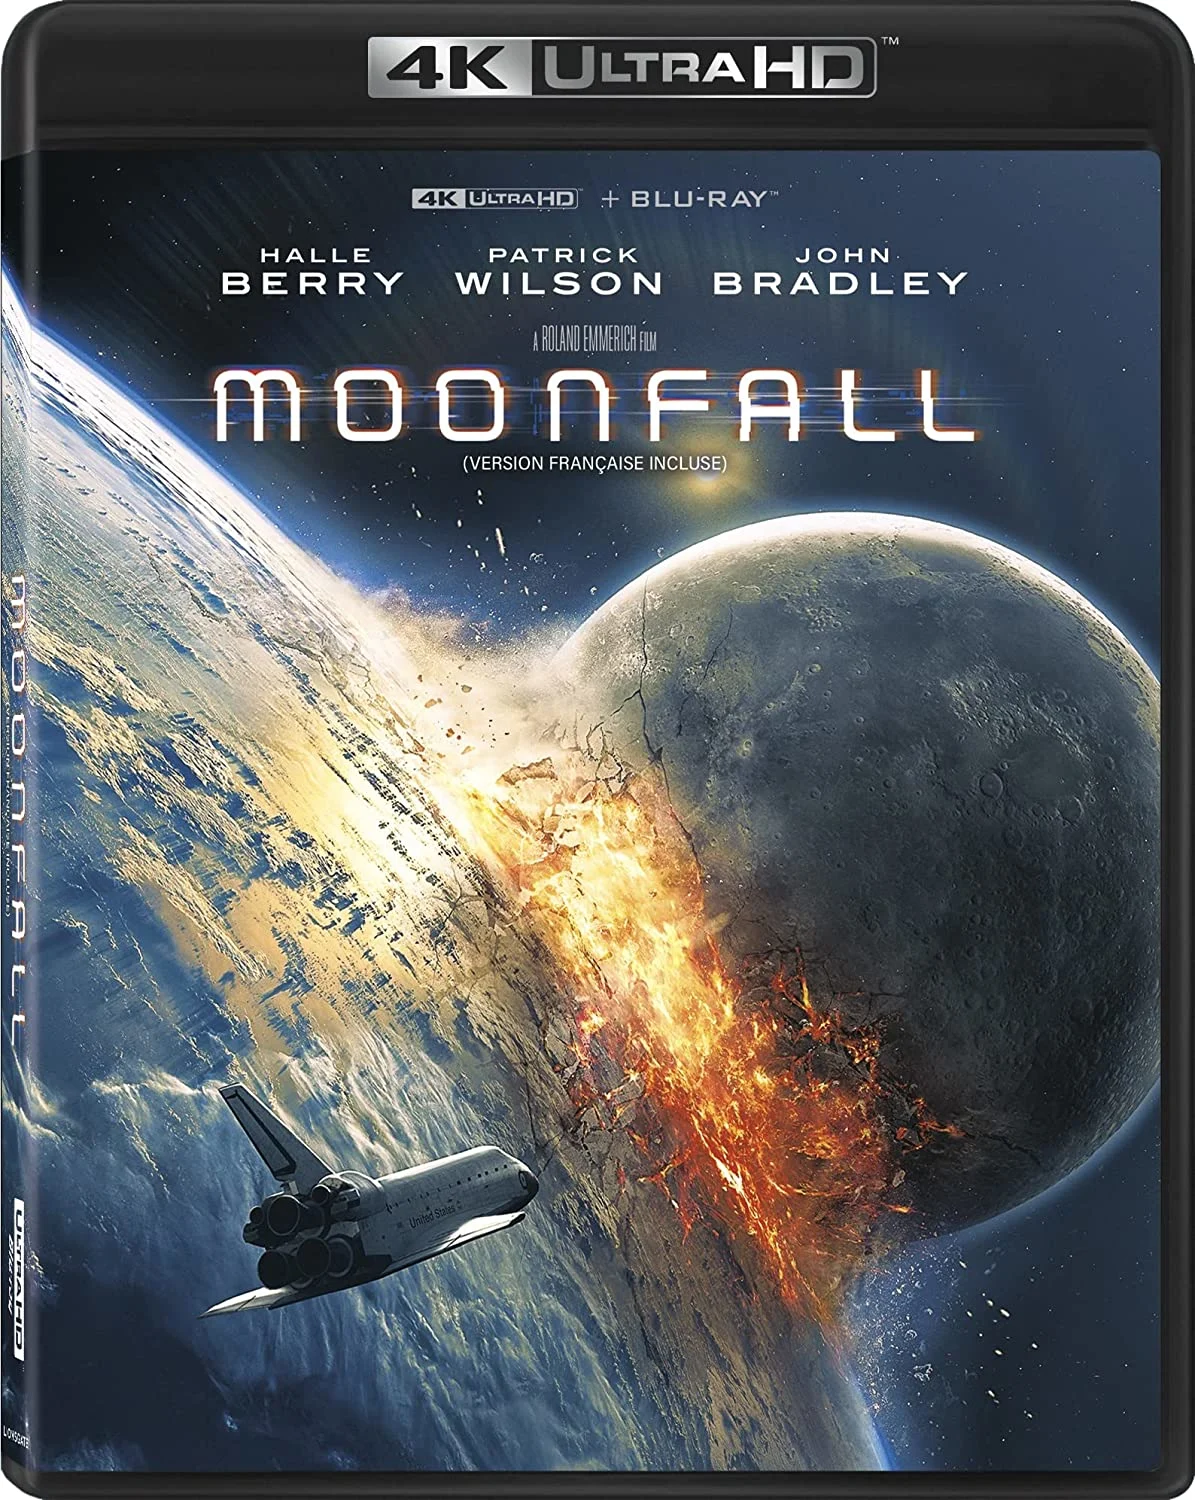 Moonfall (4K-UHD) on MovieShack